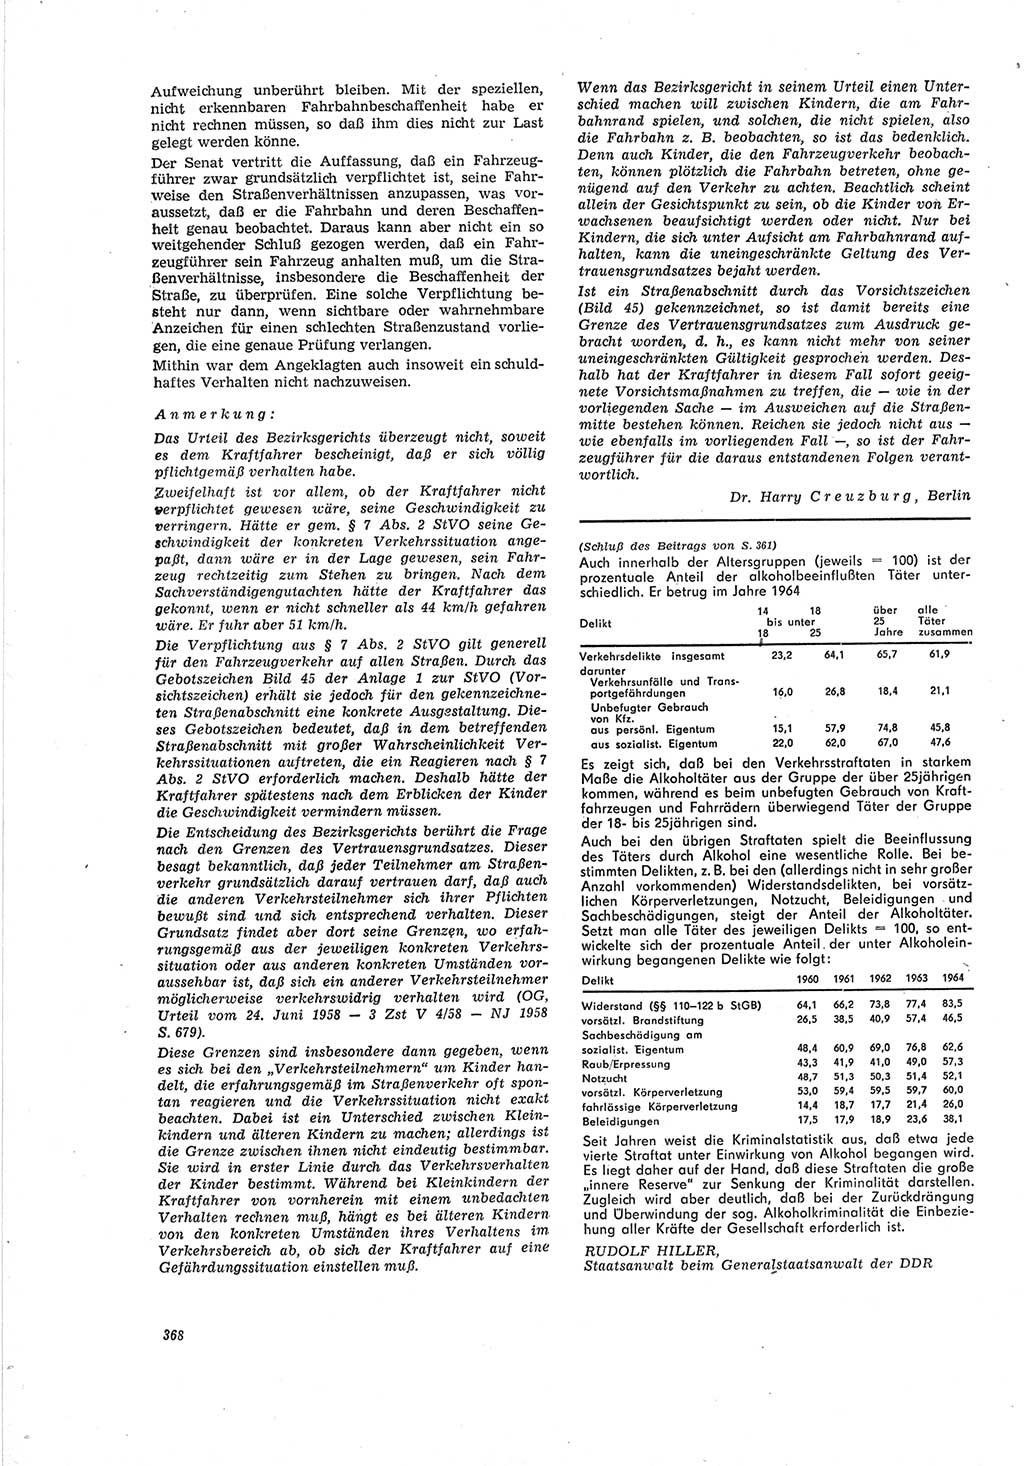 Neue Justiz (NJ), Zeitschrift für Recht und Rechtswissenschaft [Deutsche Demokratische Republik (DDR)], 19. Jahrgang 1965, Seite 368 (NJ DDR 1965, S. 368)